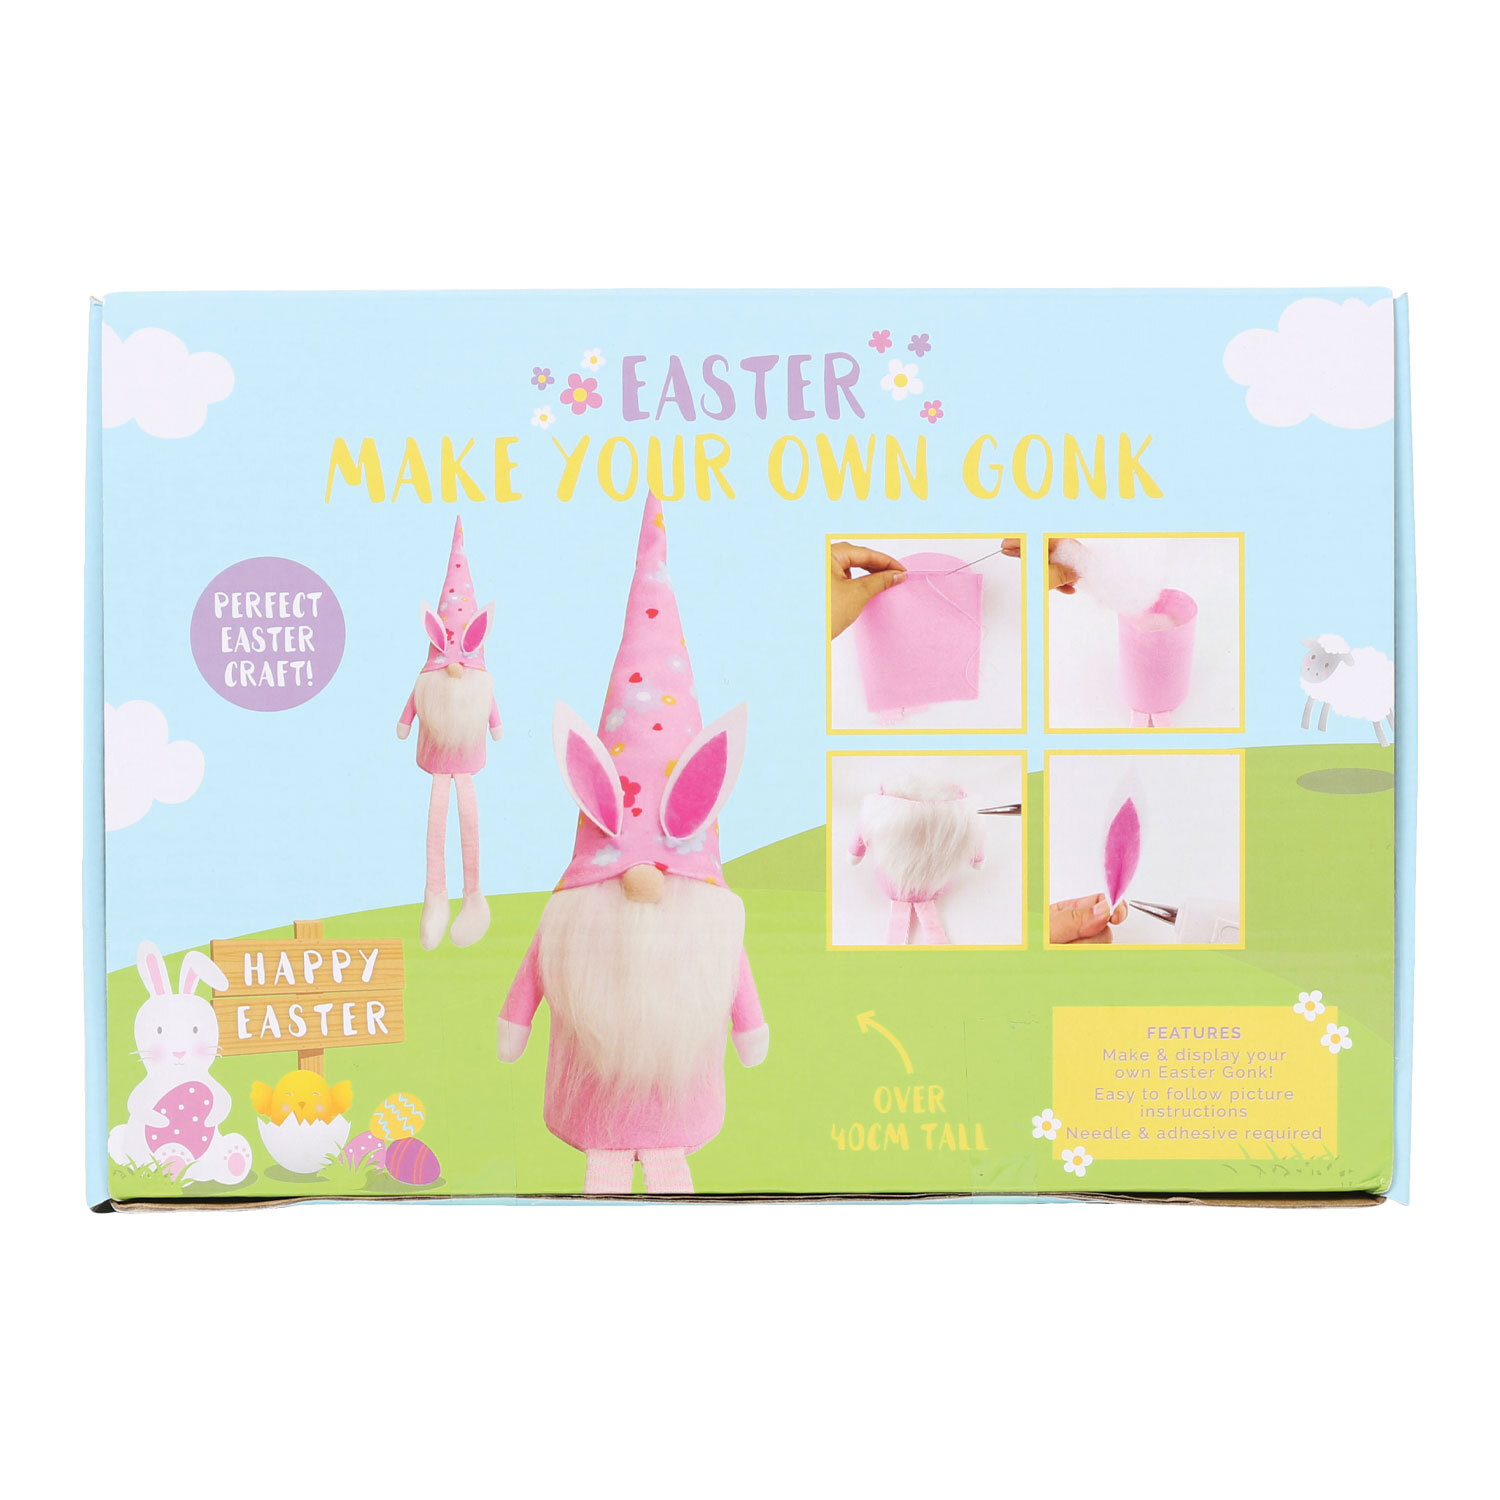 Make Your Own Easter Gonk Set Image 1